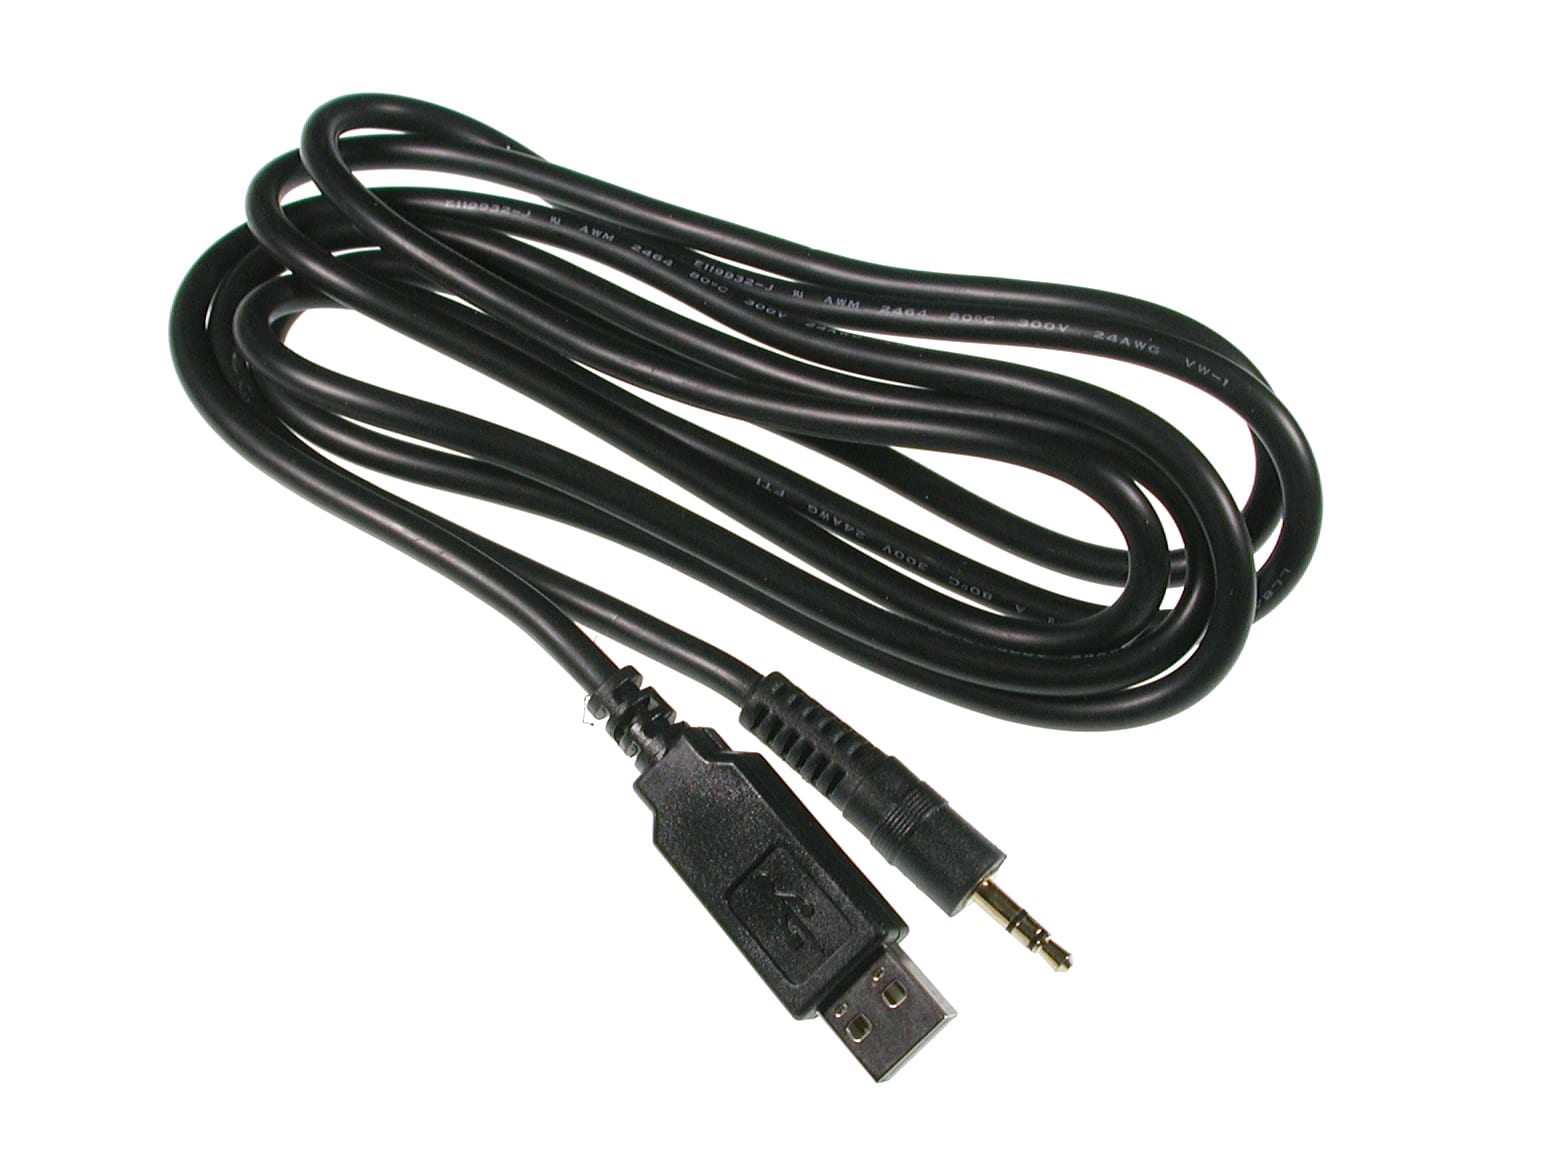 USB PICAXE Programming Cable Solarbotics Ltd.